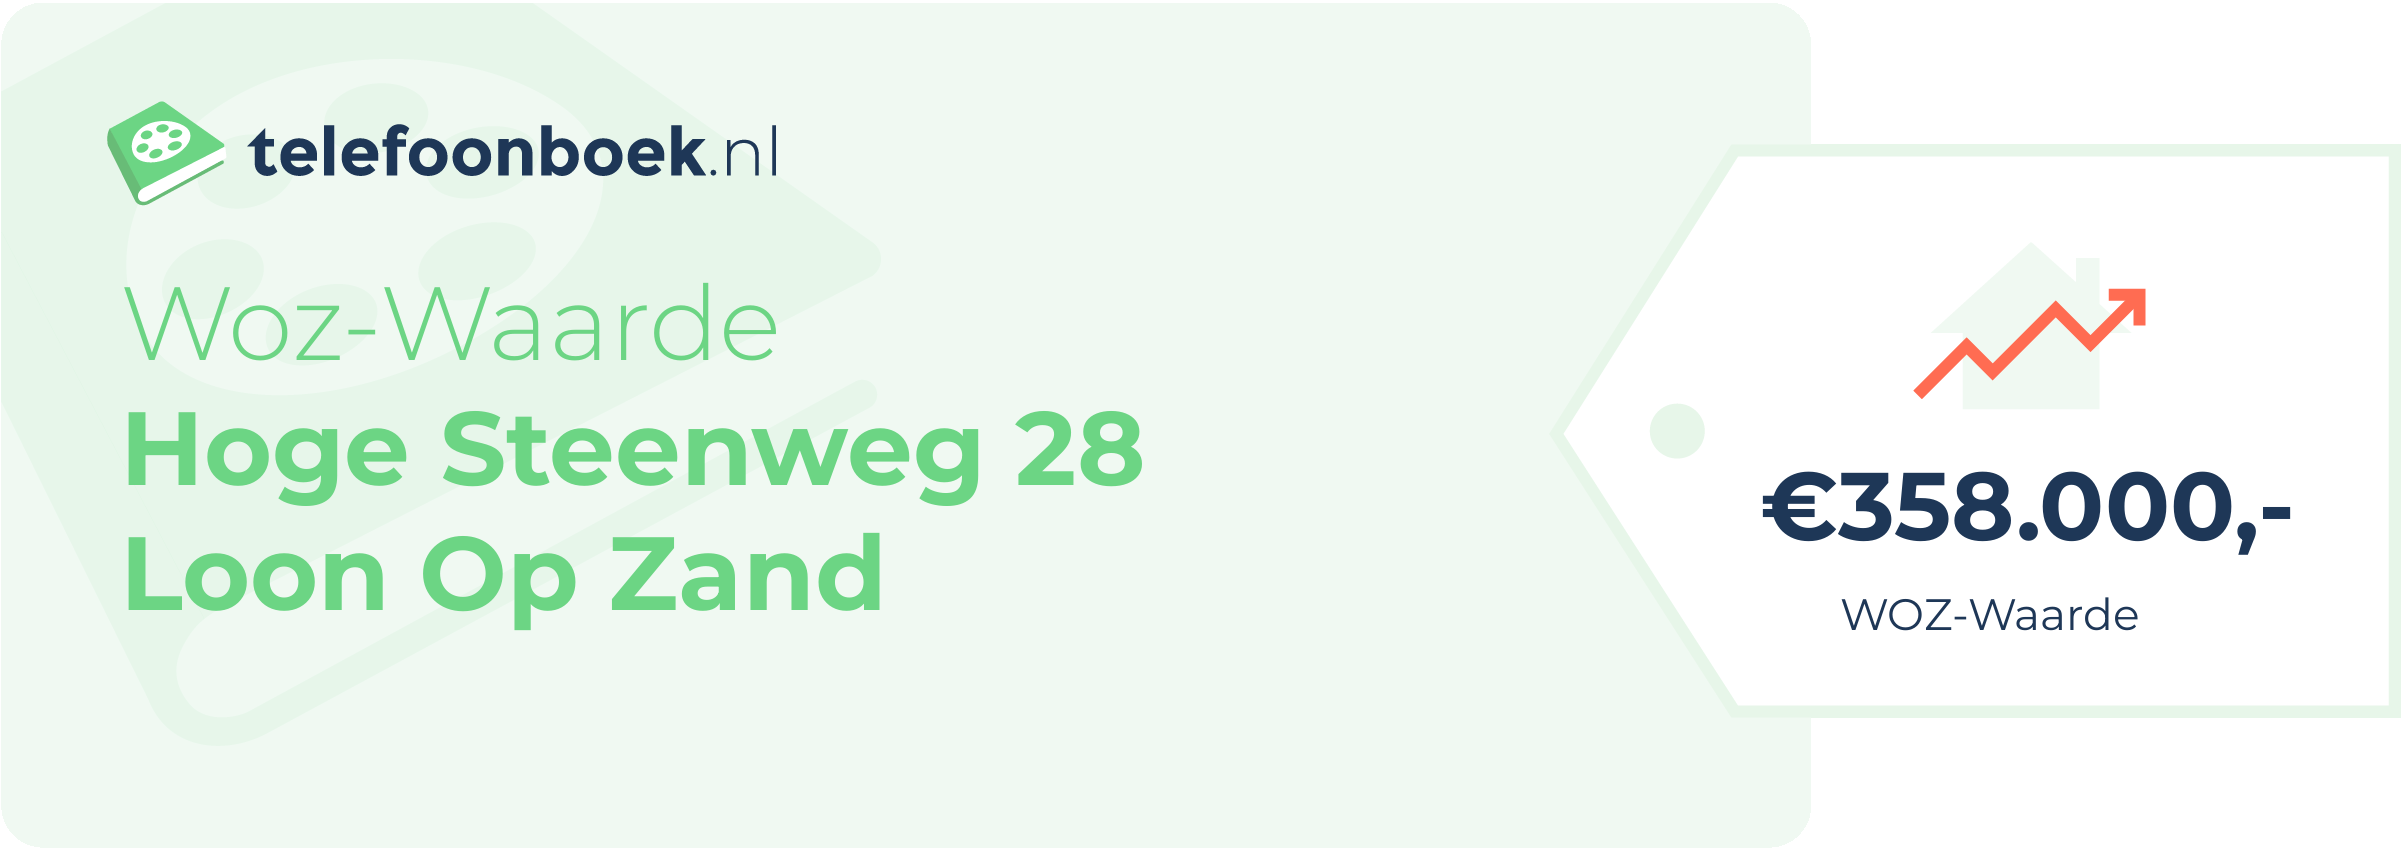 WOZ-waarde Hoge Steenweg 28 Loon Op Zand